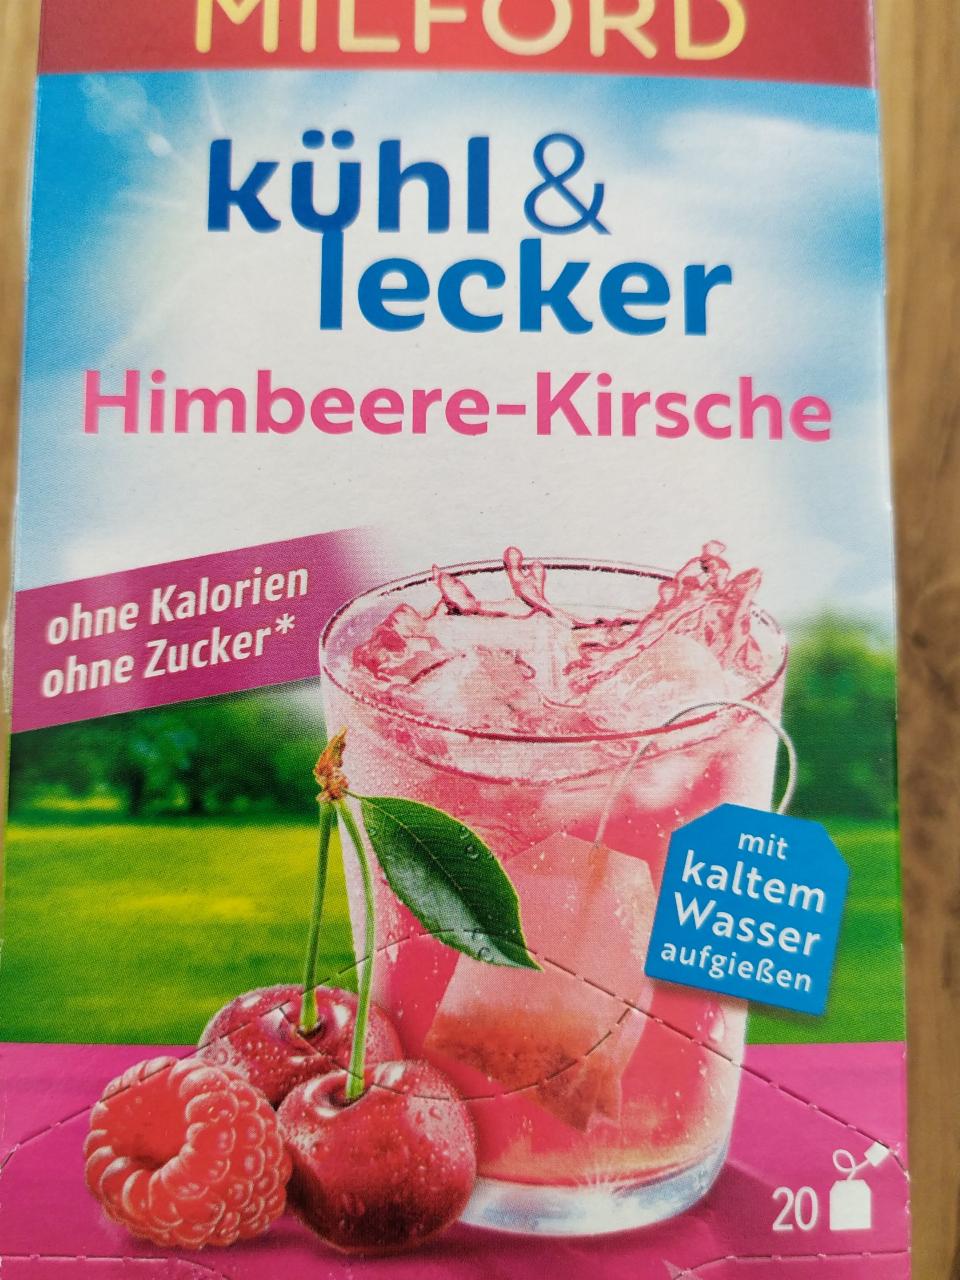 Fotografie - kühl&lecker Himbeere-Kirsche